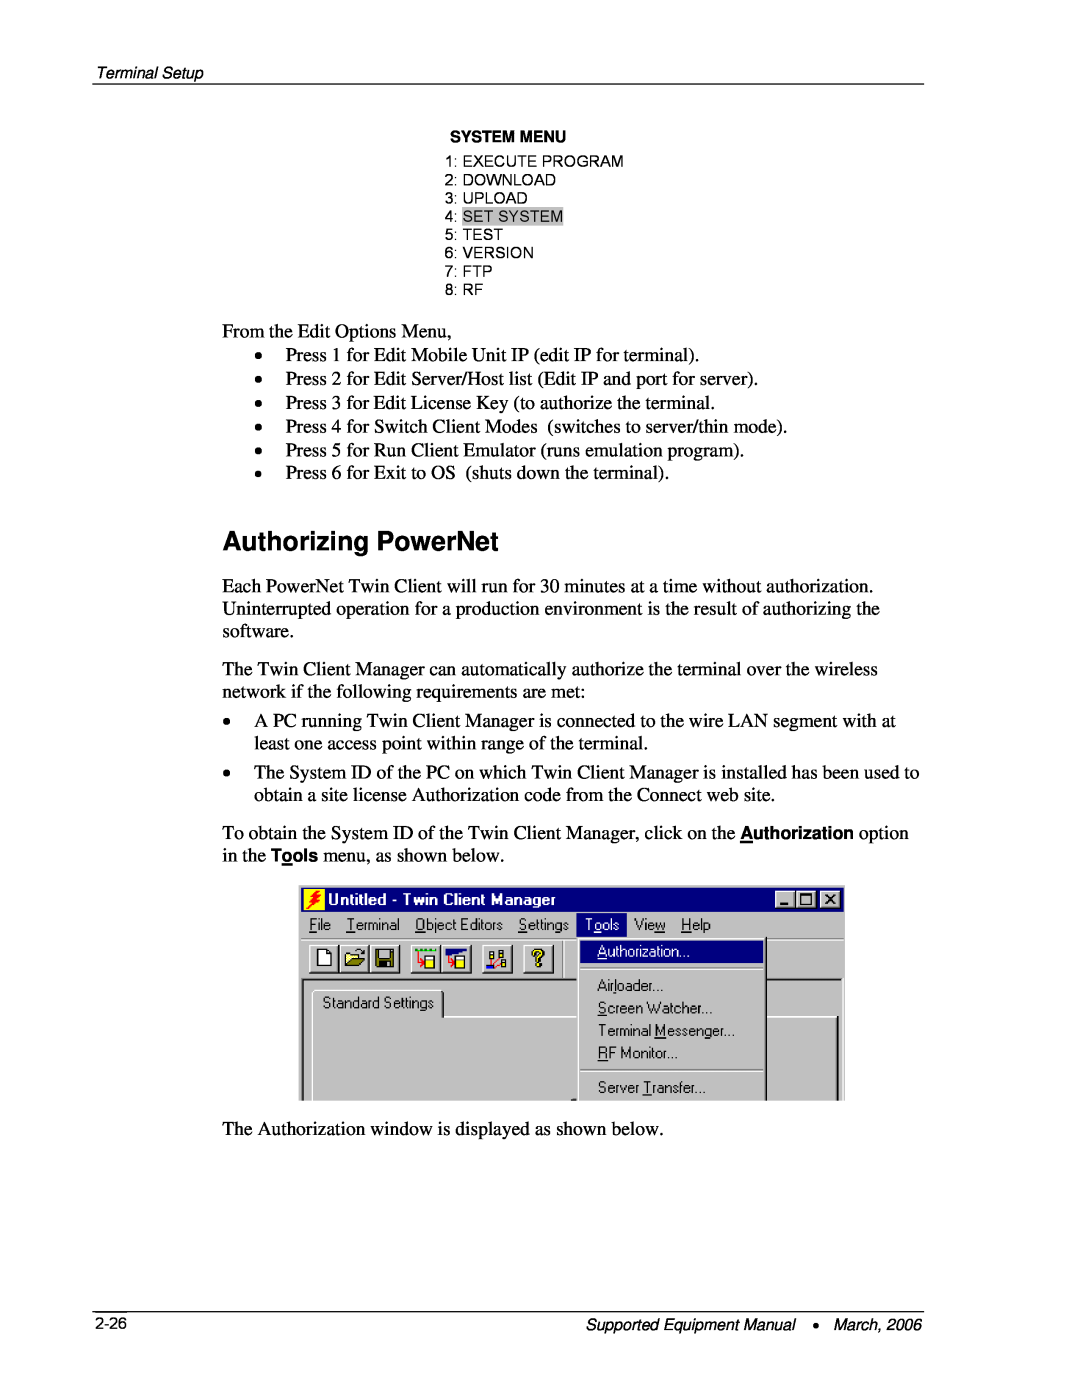 Denso BHT-7500, BHT-103 manual Authorizing PowerNet 